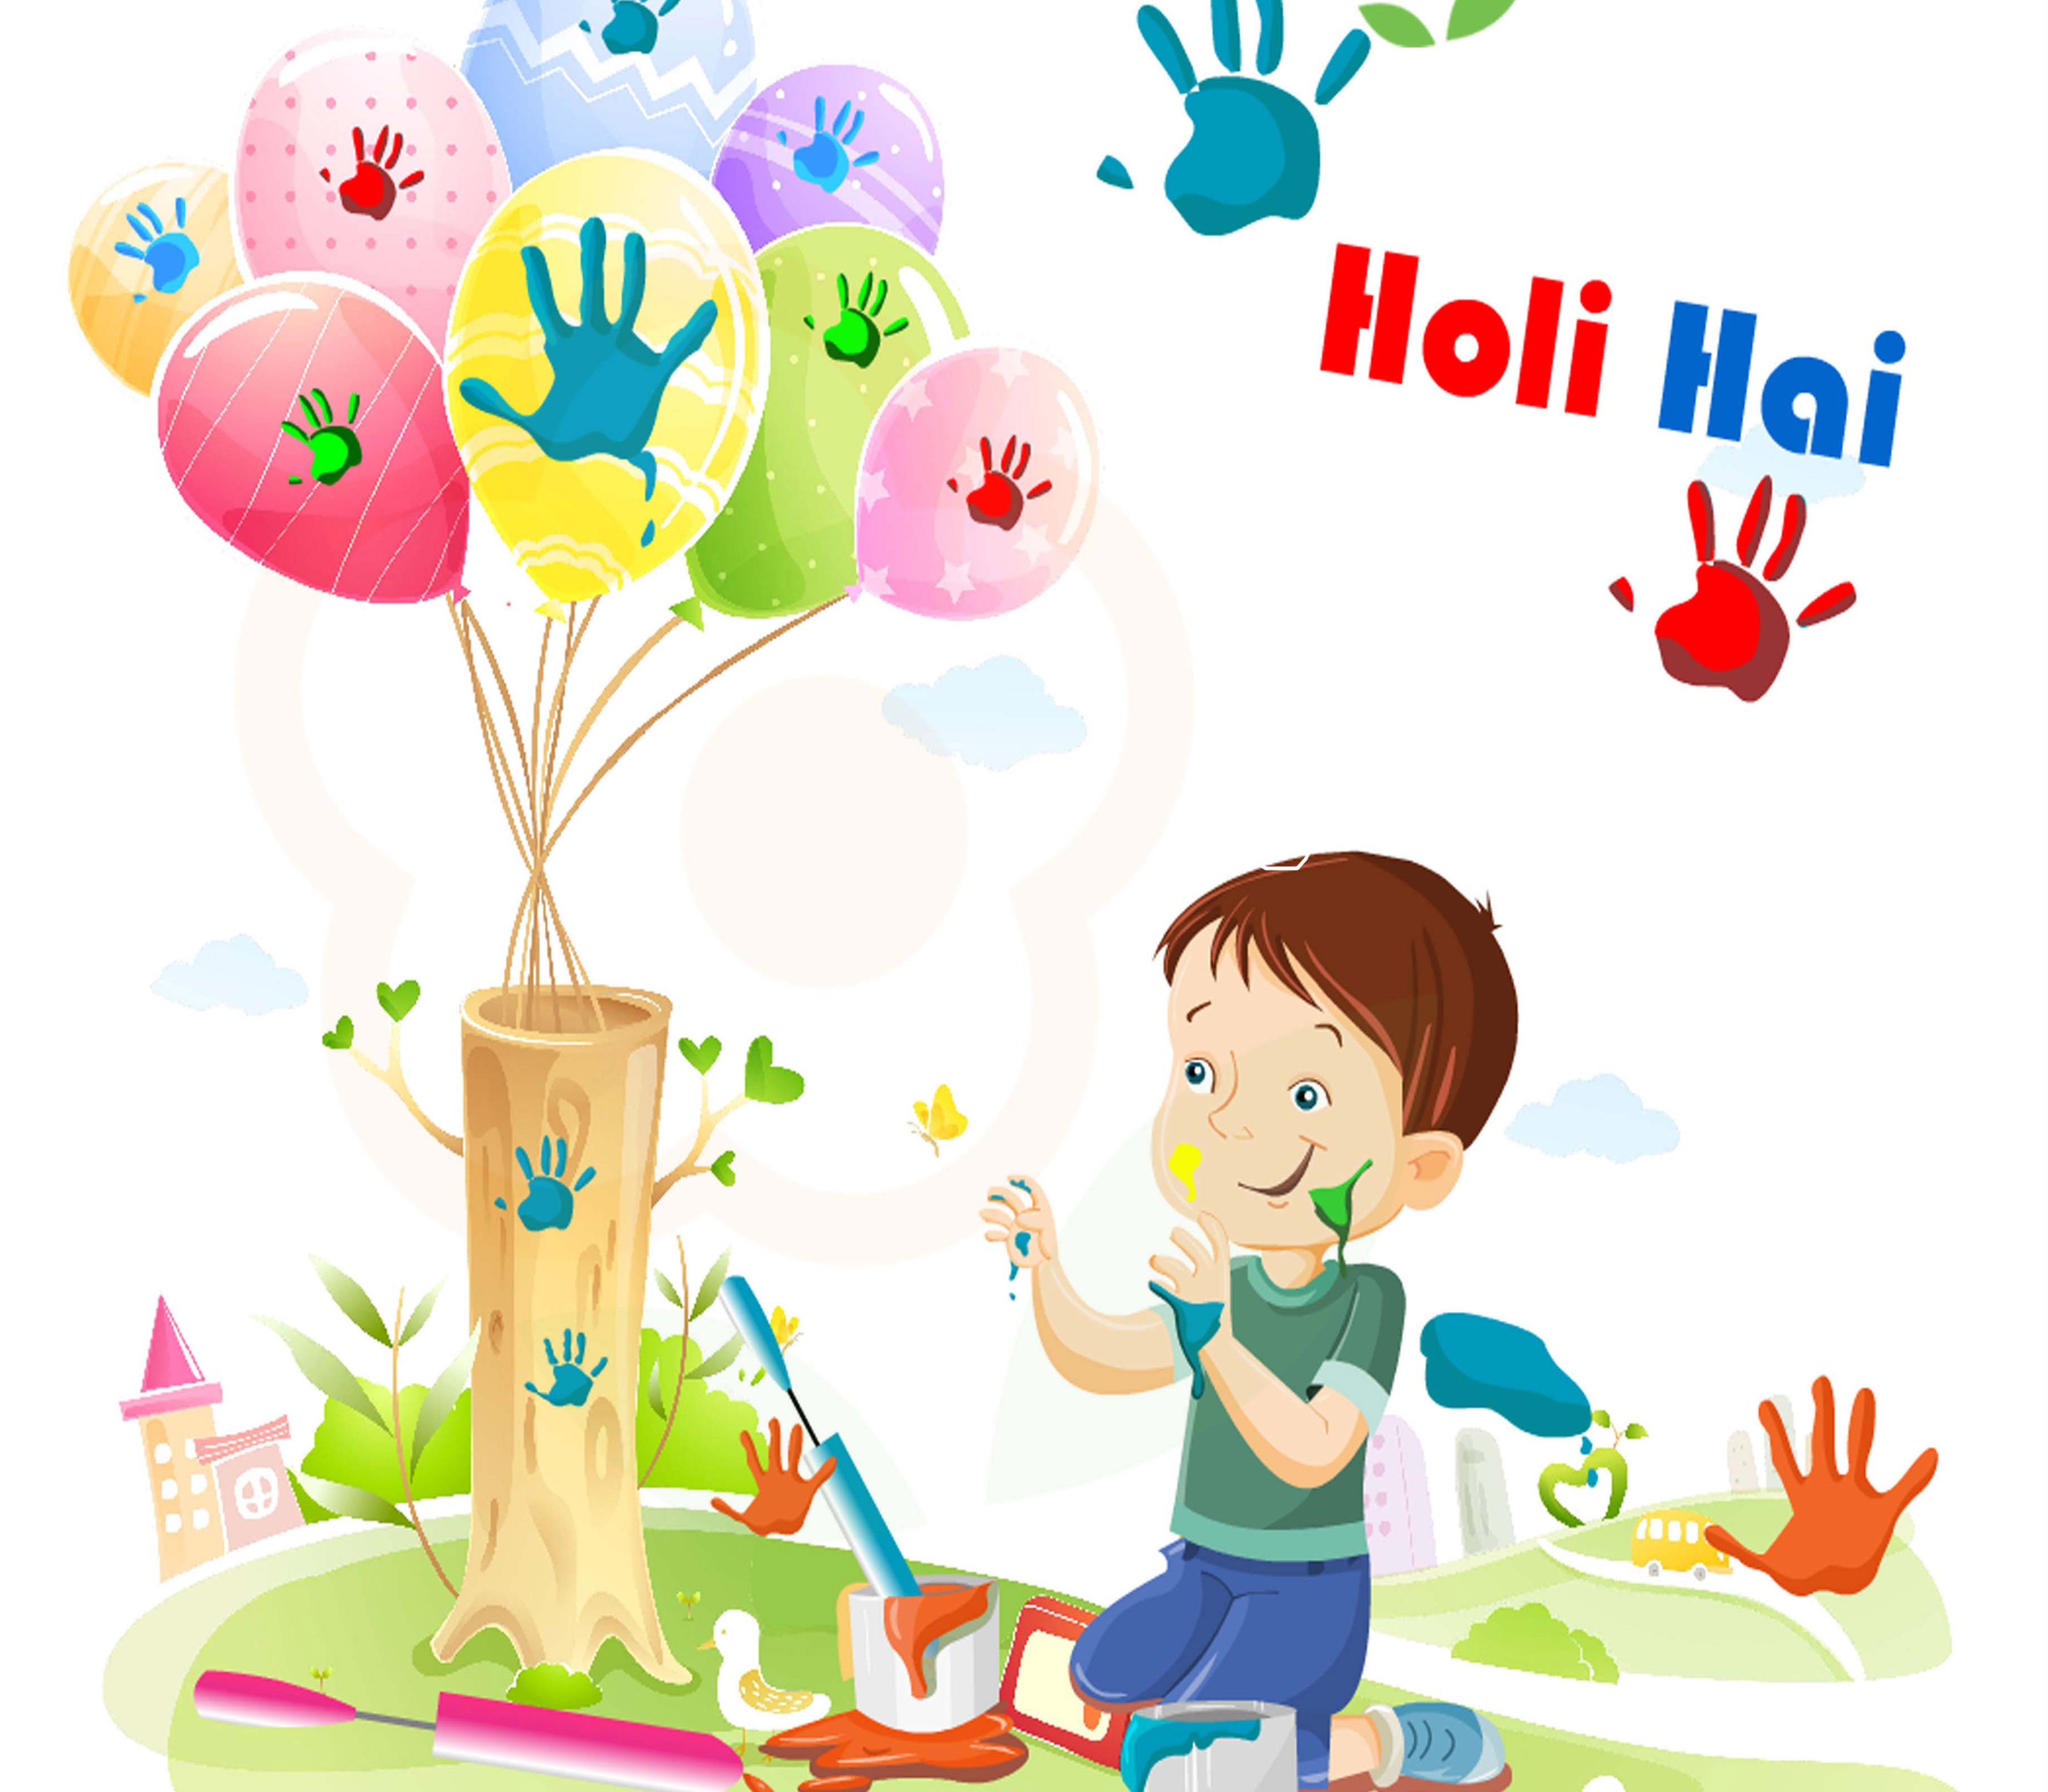 holi wishes images 